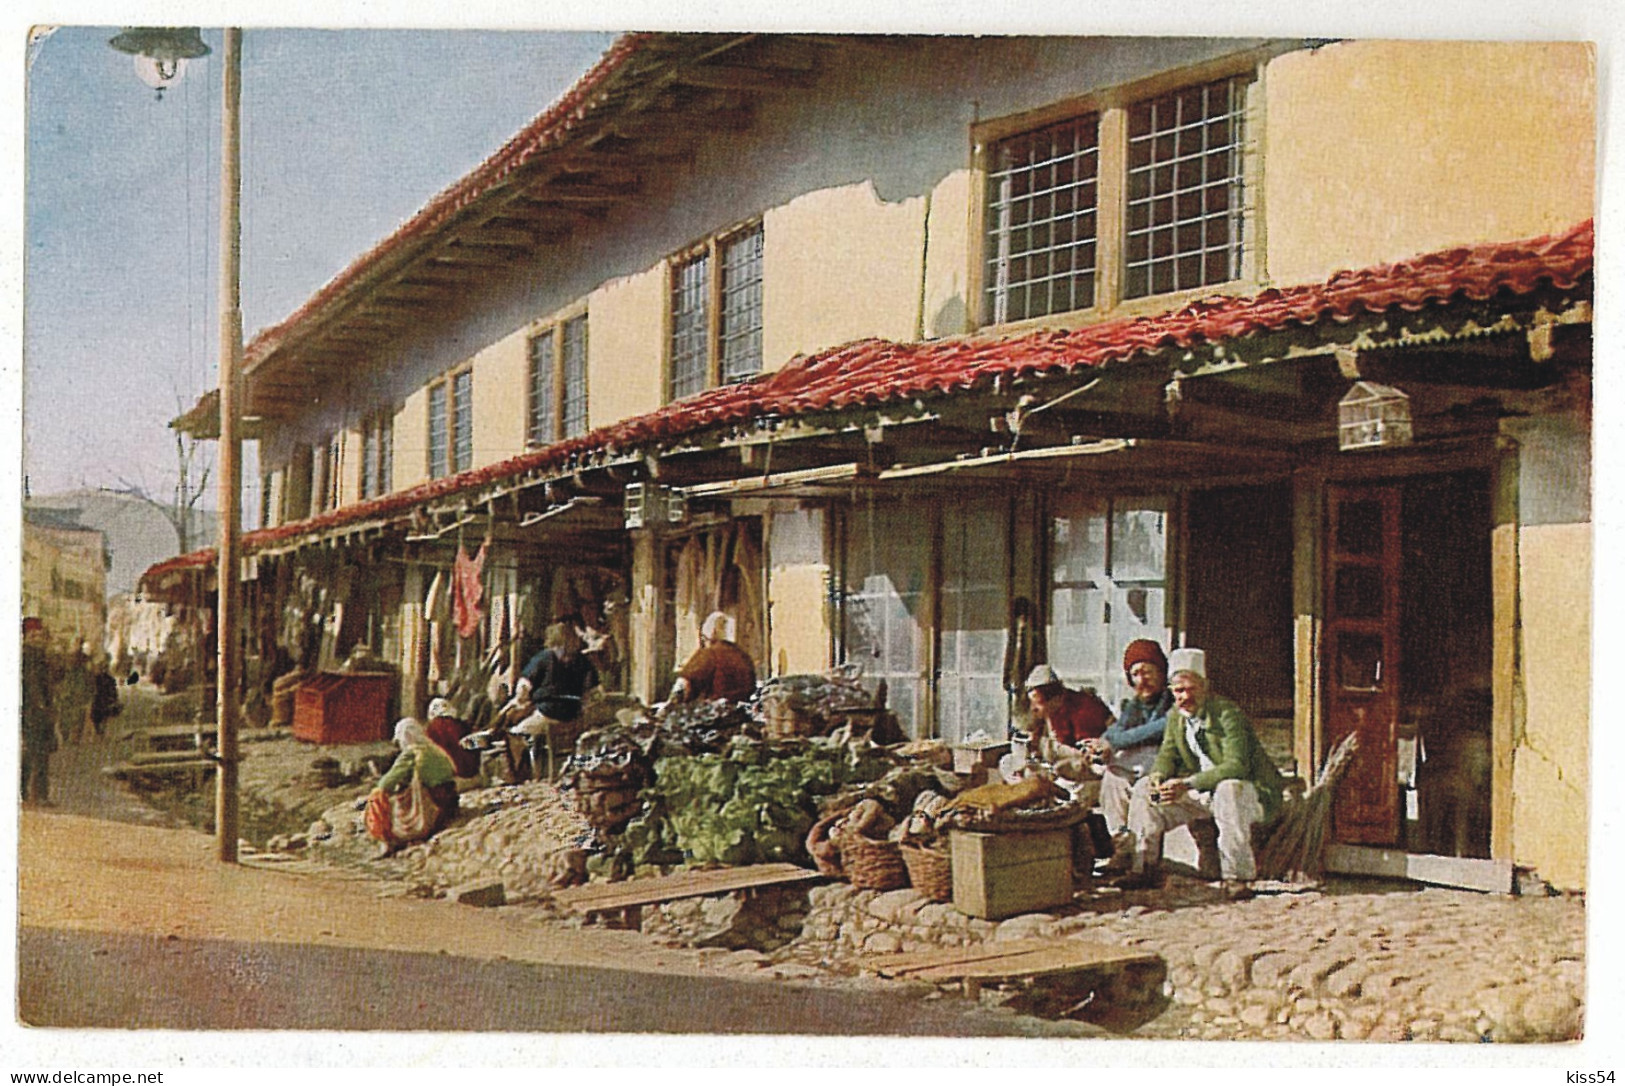 AB 2 - 2830 MARKET, Albania, Vegetables Sellers - Old Postcard - Unused - Albanie